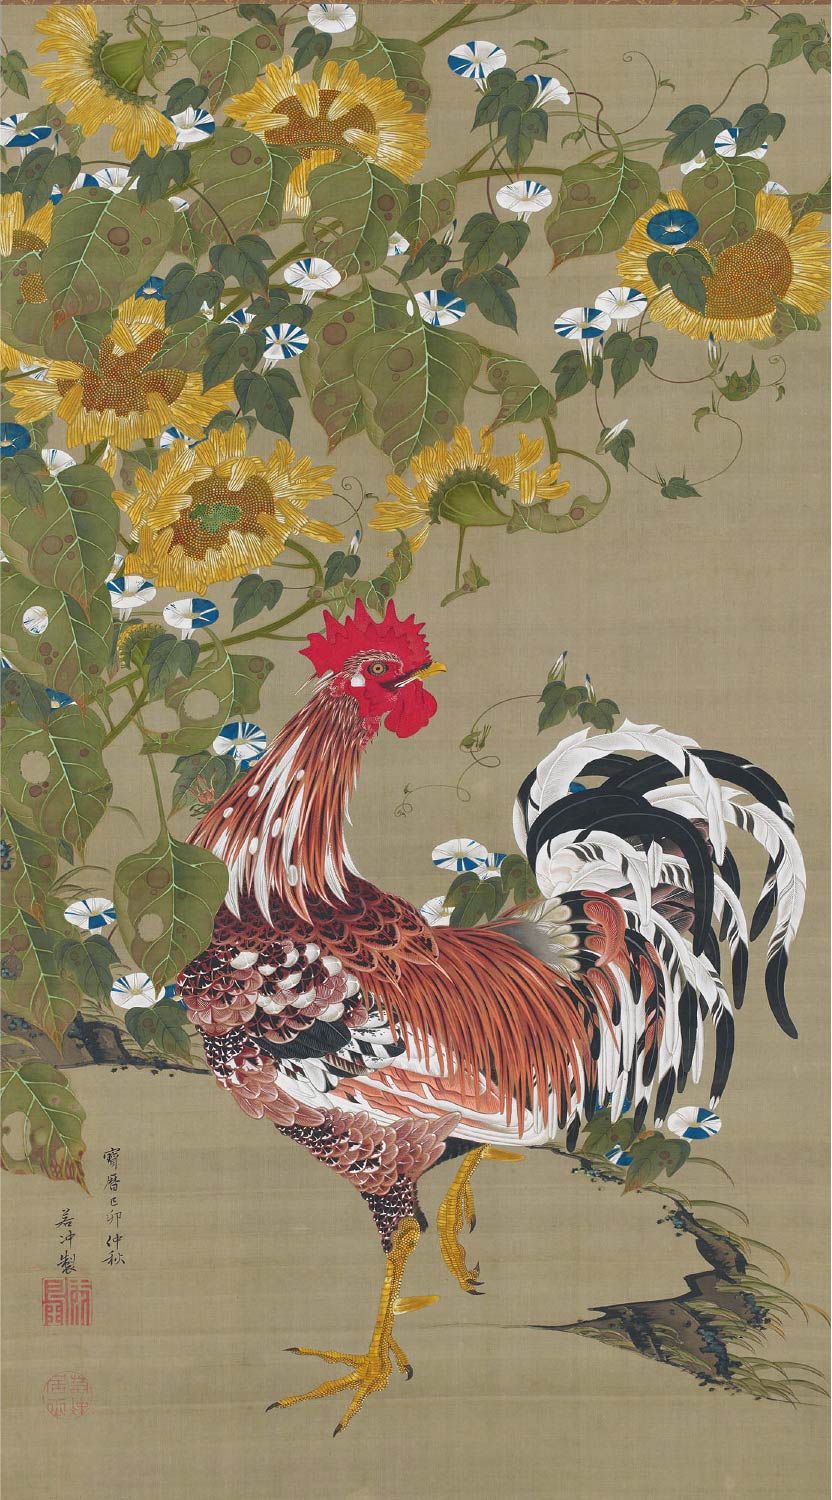 【無料壁紙】伊藤 若冲「向日葵雄鶏図 (1759)」 / Ito Jakuchu_Himawari Yukei-zu (Rooster and Sunflowers) (1759)